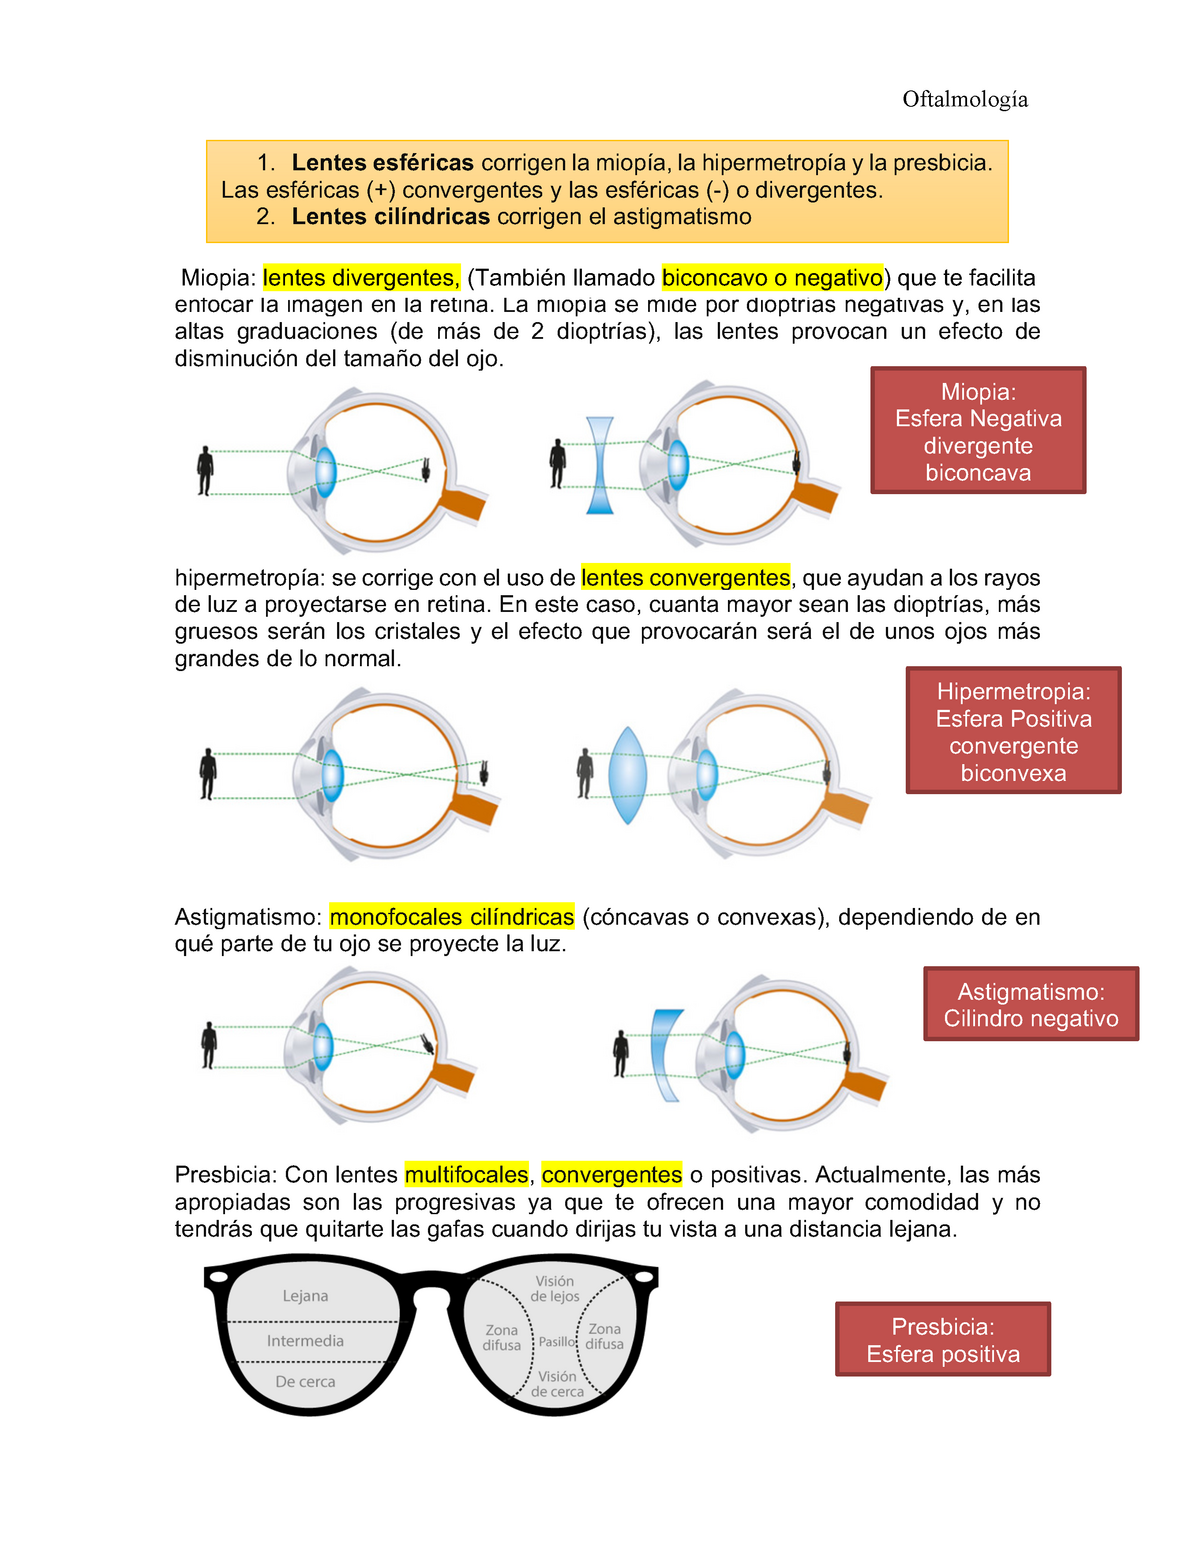 trama Surrey hijo Tipos de lentes - Giraldi Yasareth Vidal Sánchez Oftalmología Miopía :  lentes divergentes, (también - Studocu